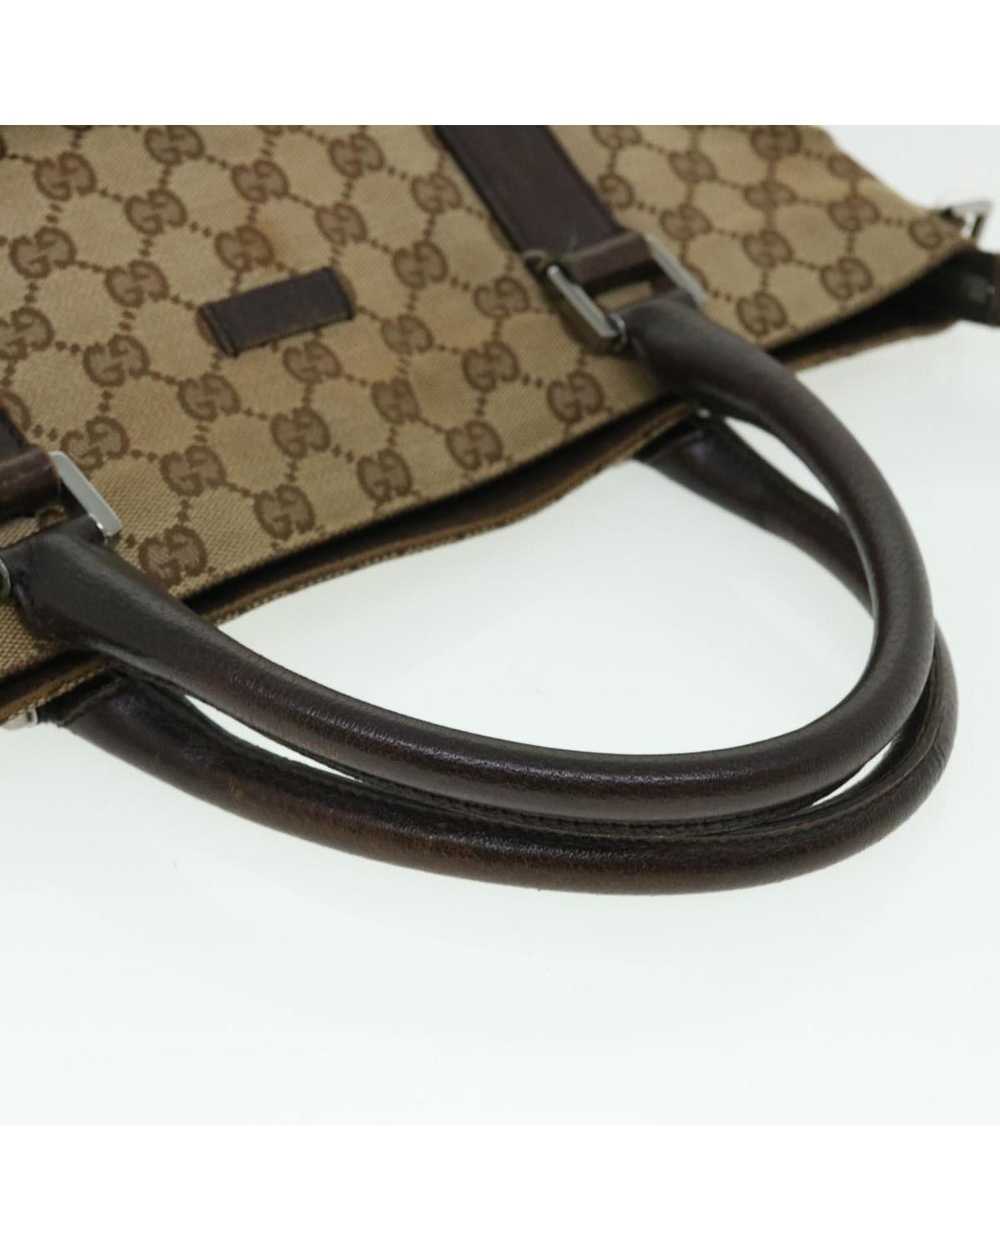 Gucci Beige Canvas Shoulder Bag with GG Design - image 8